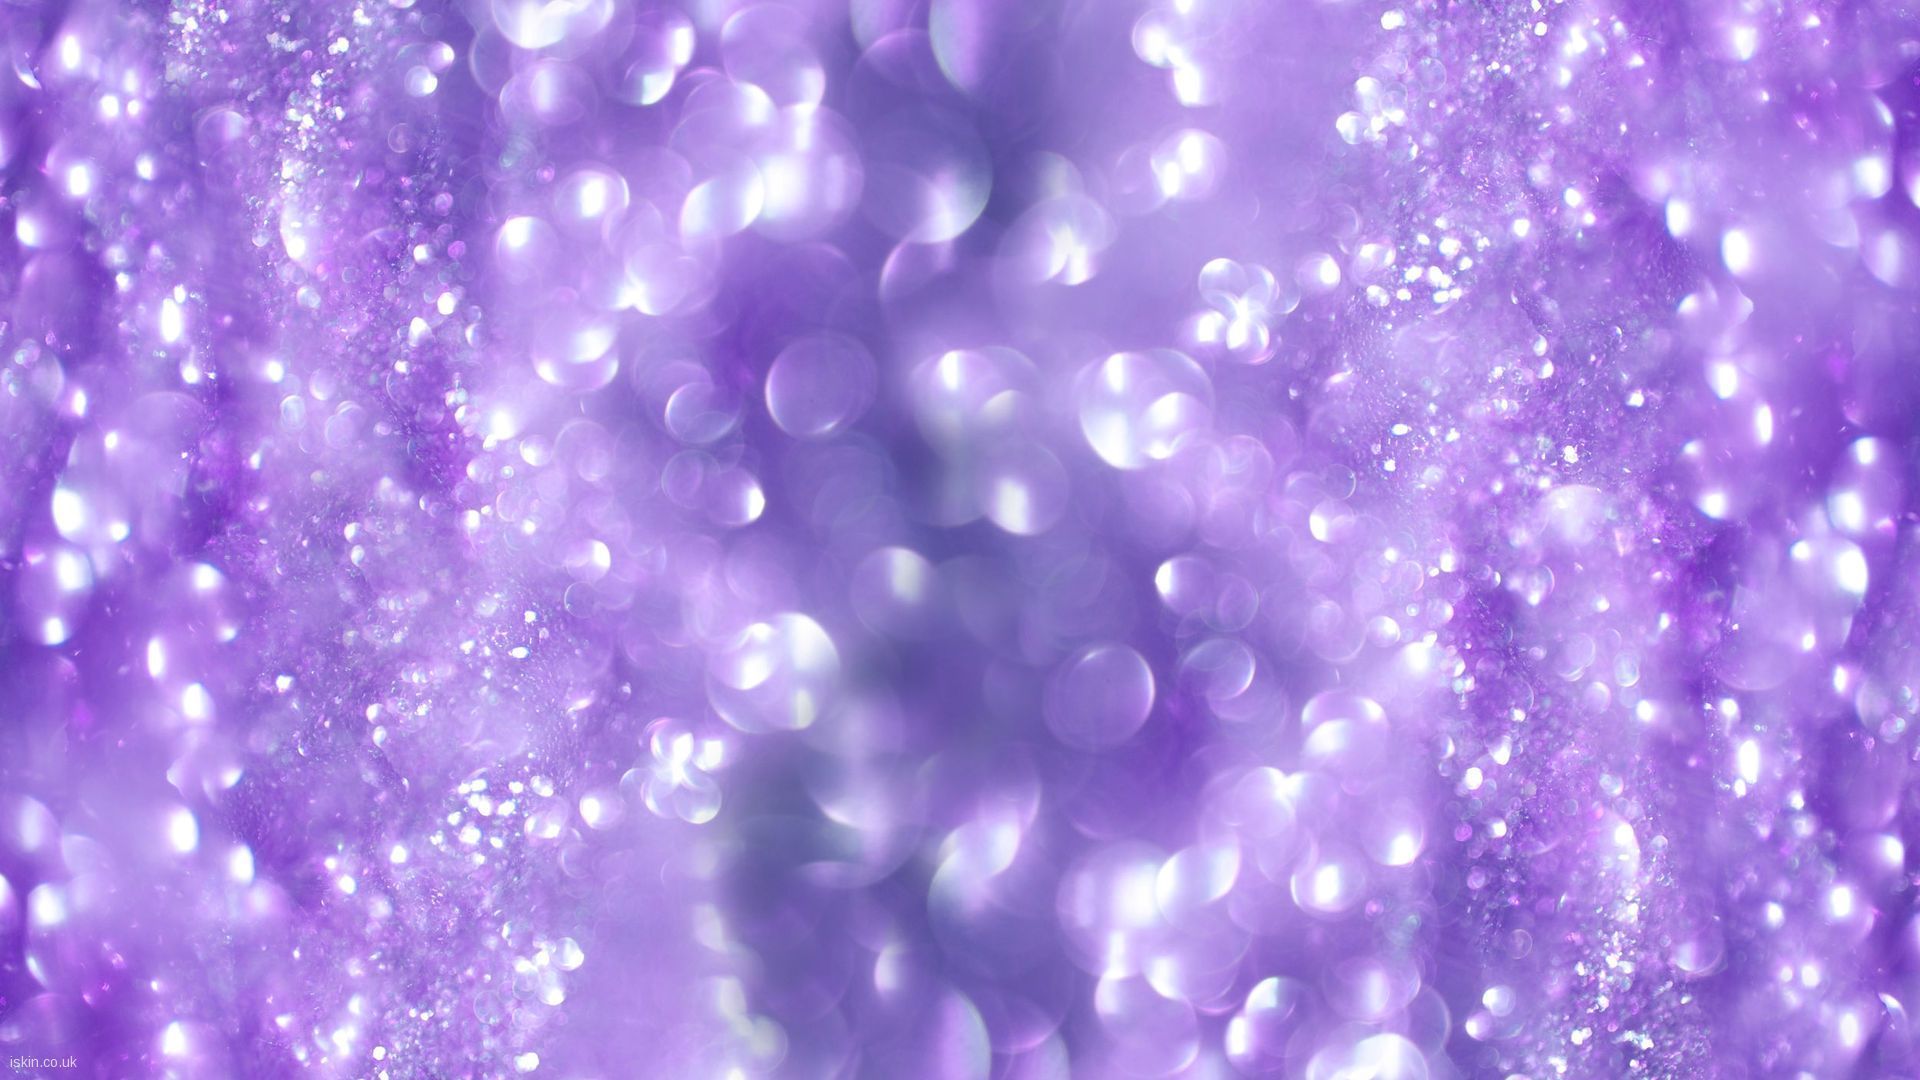 Glitter Aesthetic Desktop Wallpaper